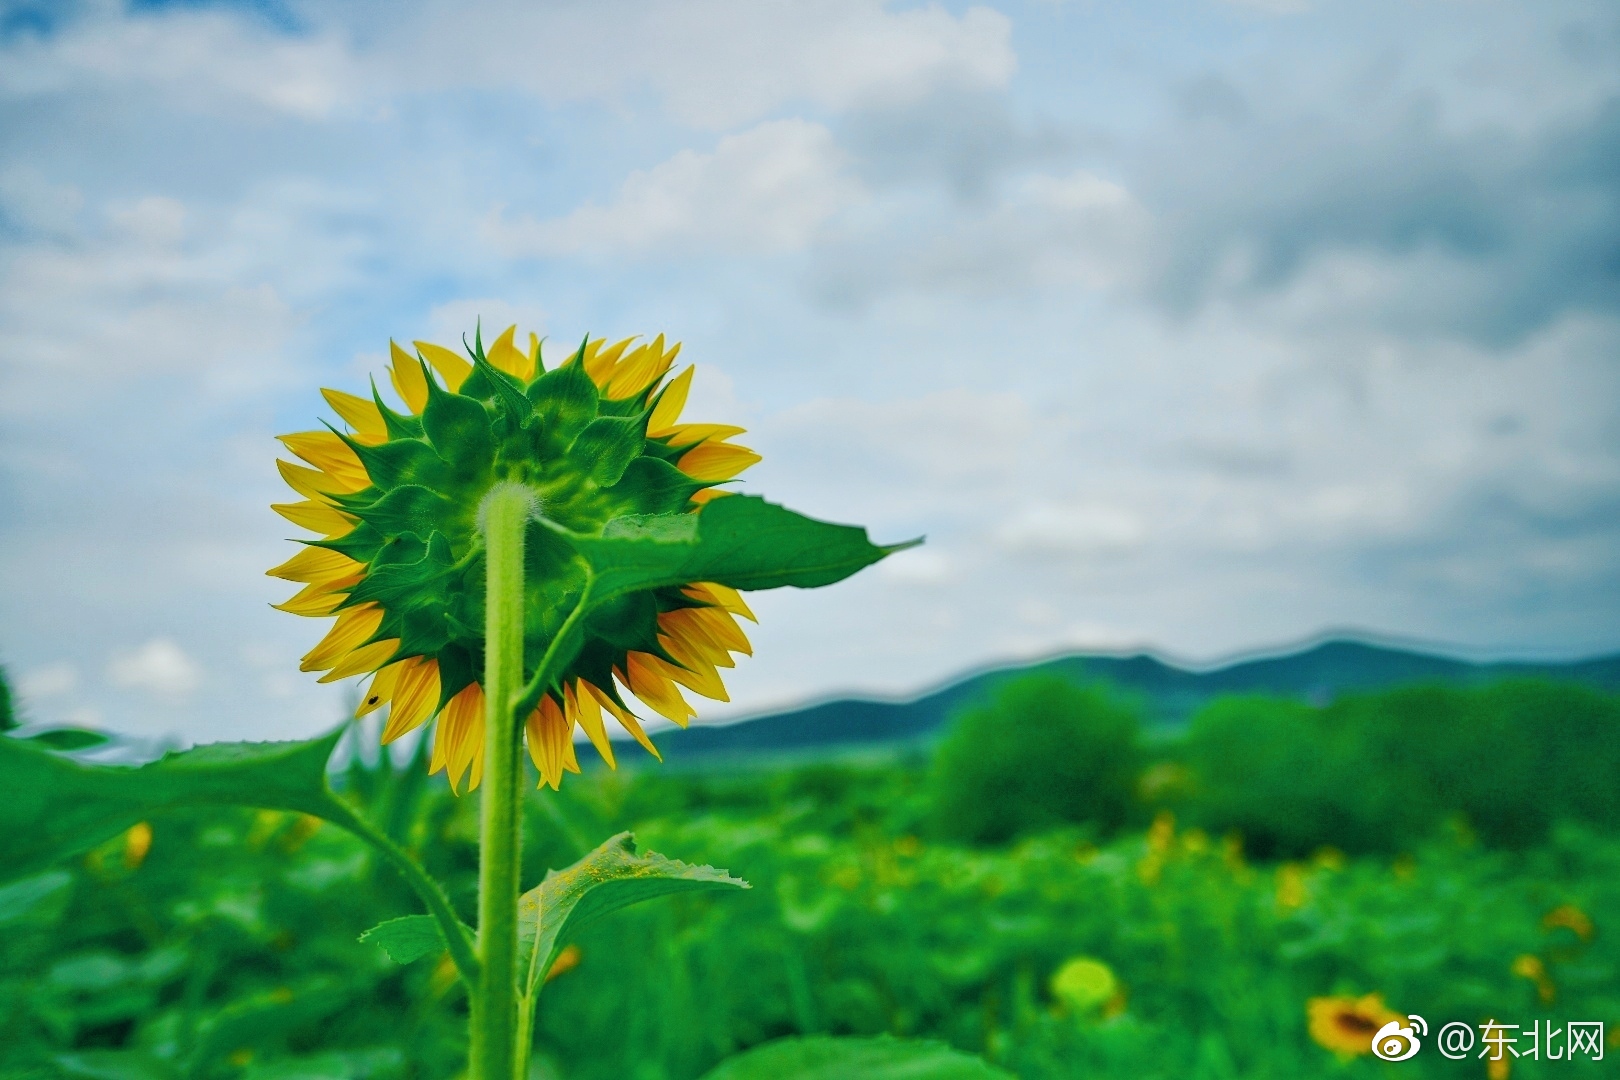 位于宾县境内的一大片向日葵,看着都觉得心情舒畅～图片来自网友随喜